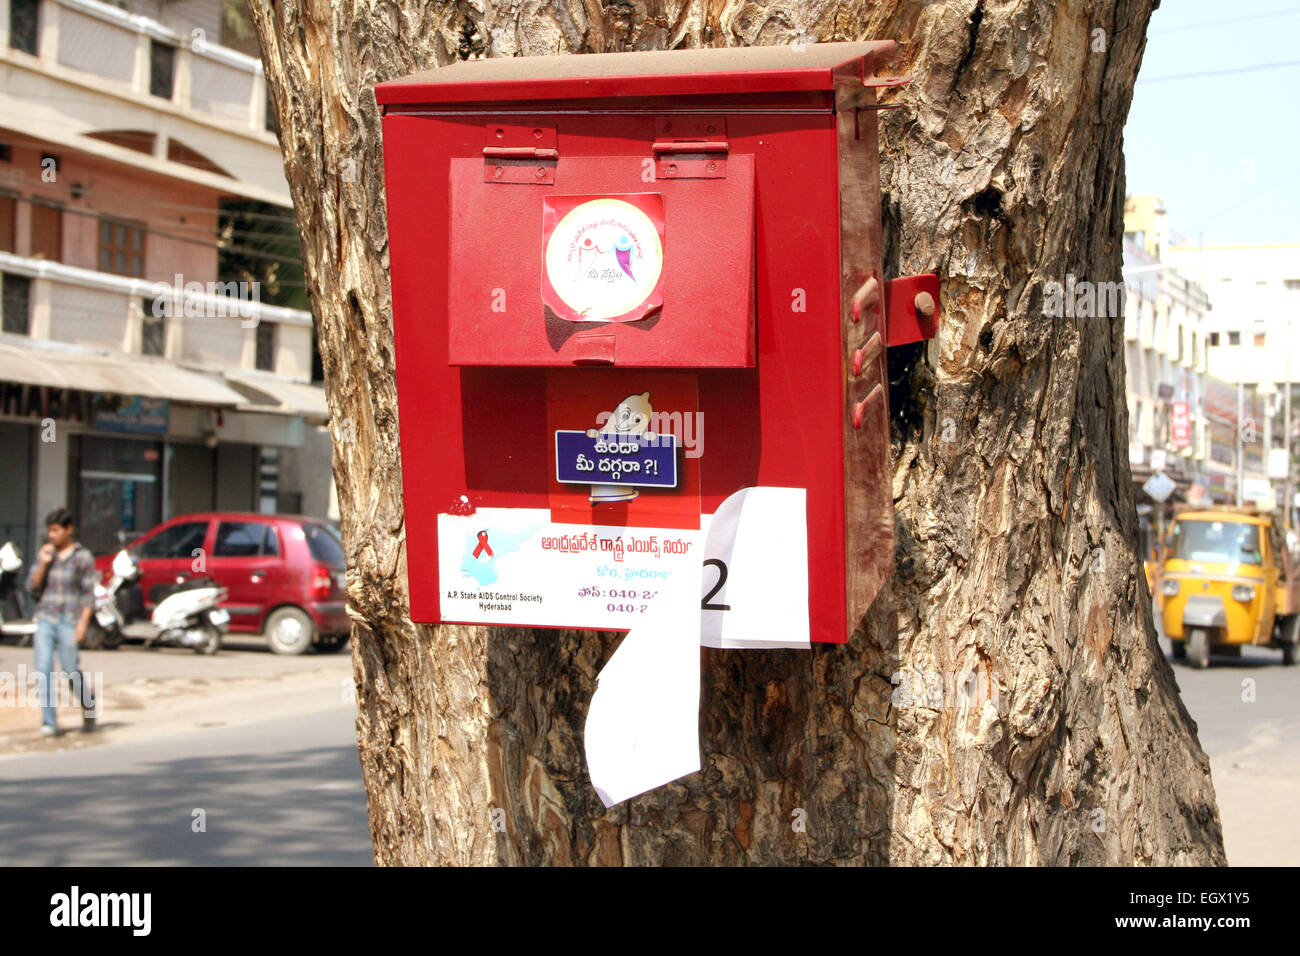 La société distribue des préservatifs contre le sida à l'aide de distributeurs automatiques dans les lieux publics en janvier 28,2012 Hyderabad,Ap,Inde. Banque D'Images